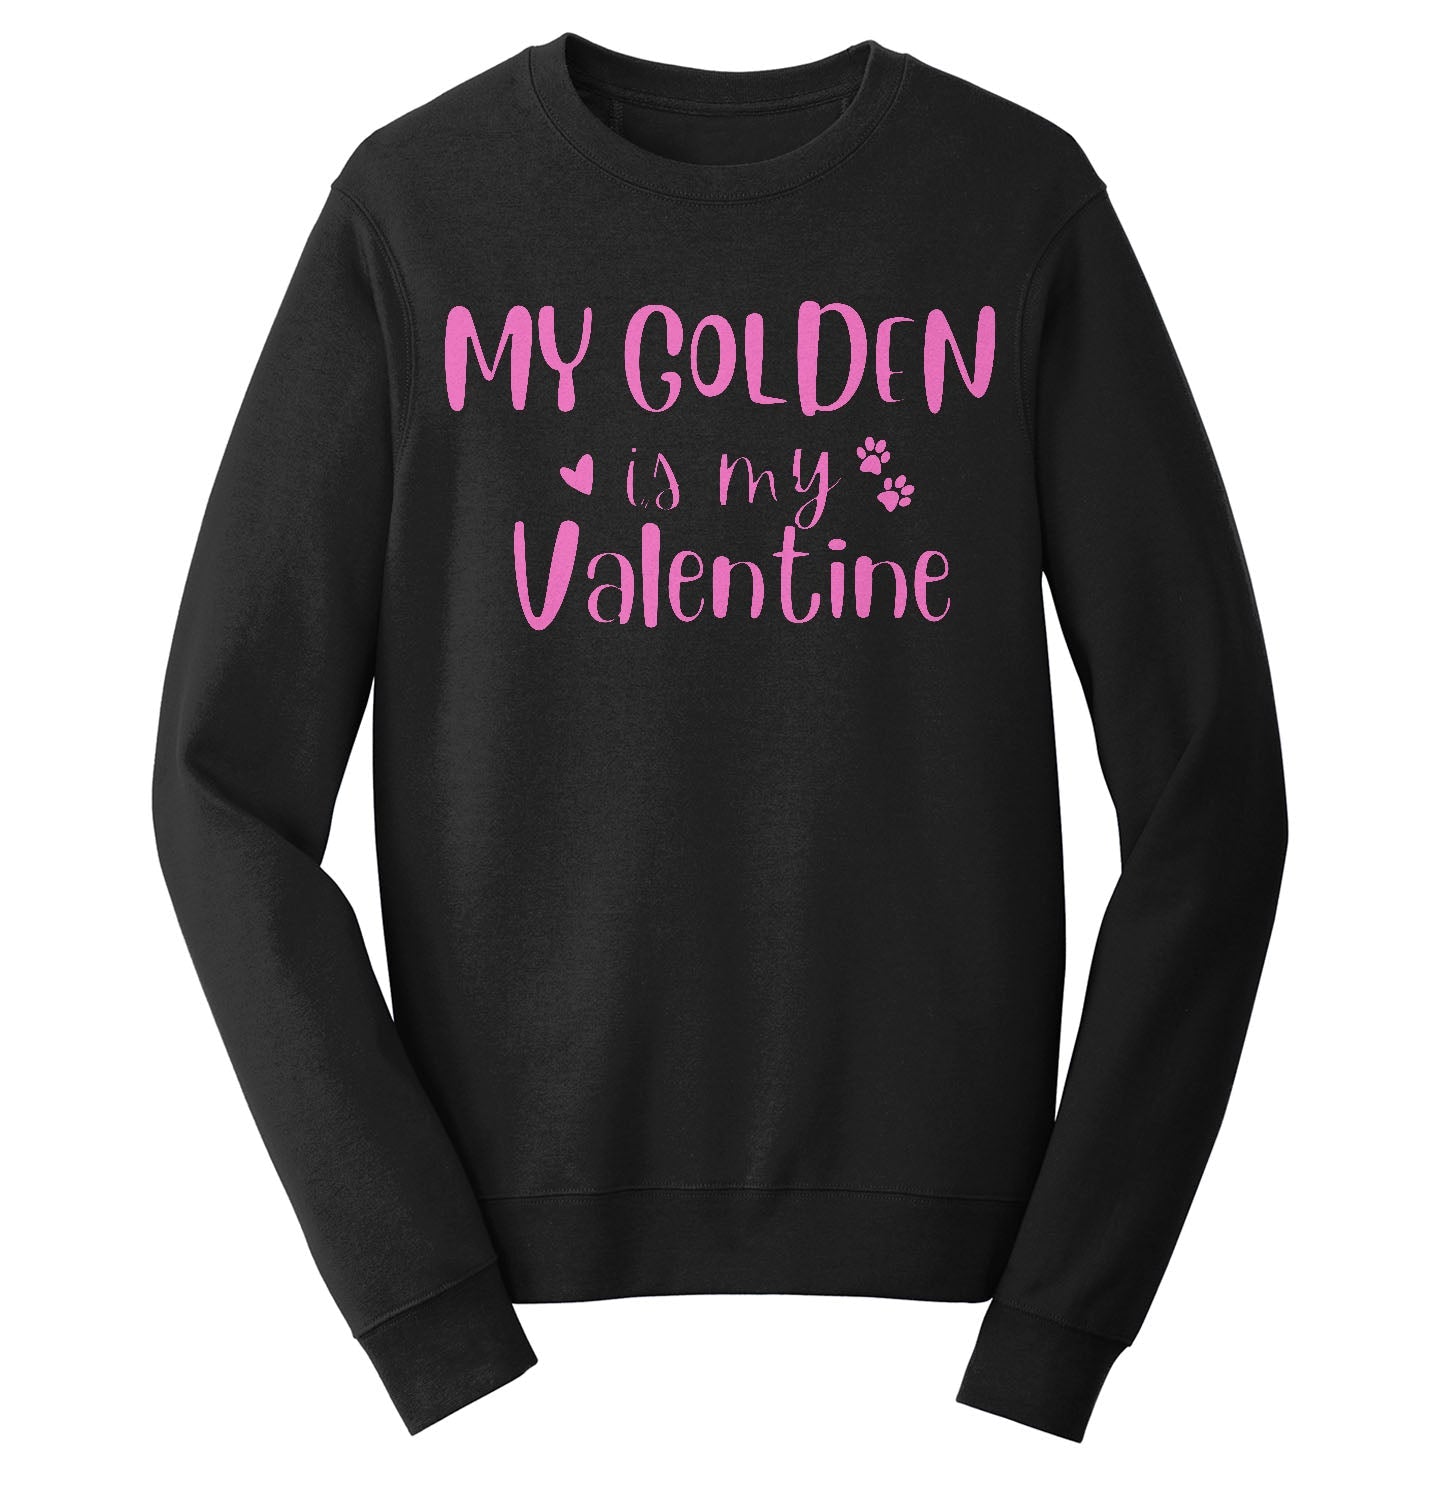 My Golden Valentine - Adult Unisex Crewneck Sweatshirt